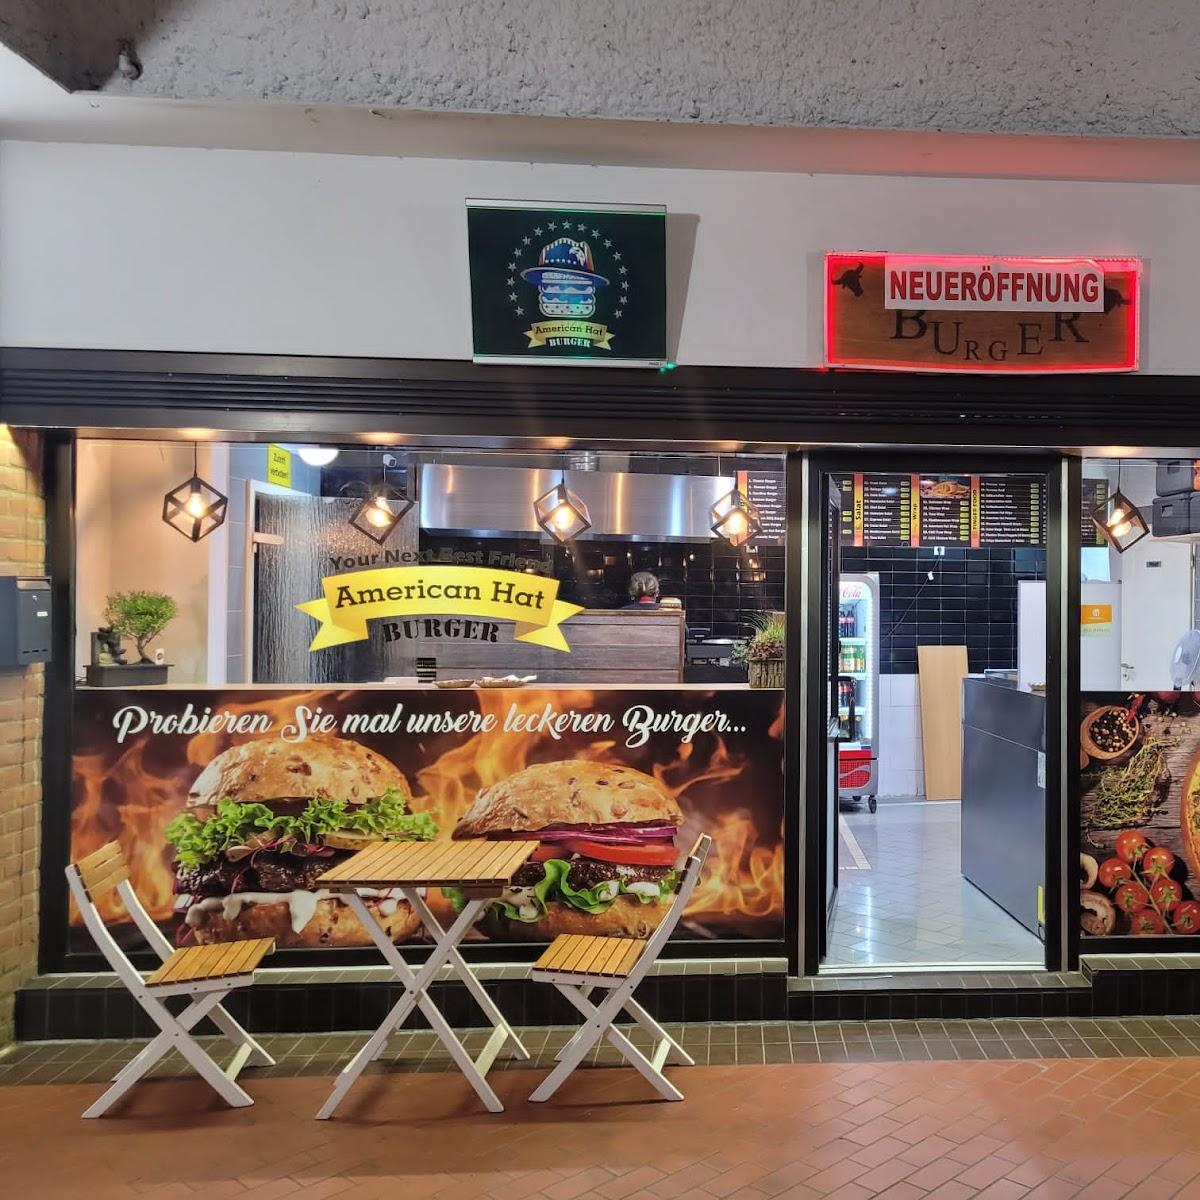 Restaurant "American Hat Burger" in Frechen